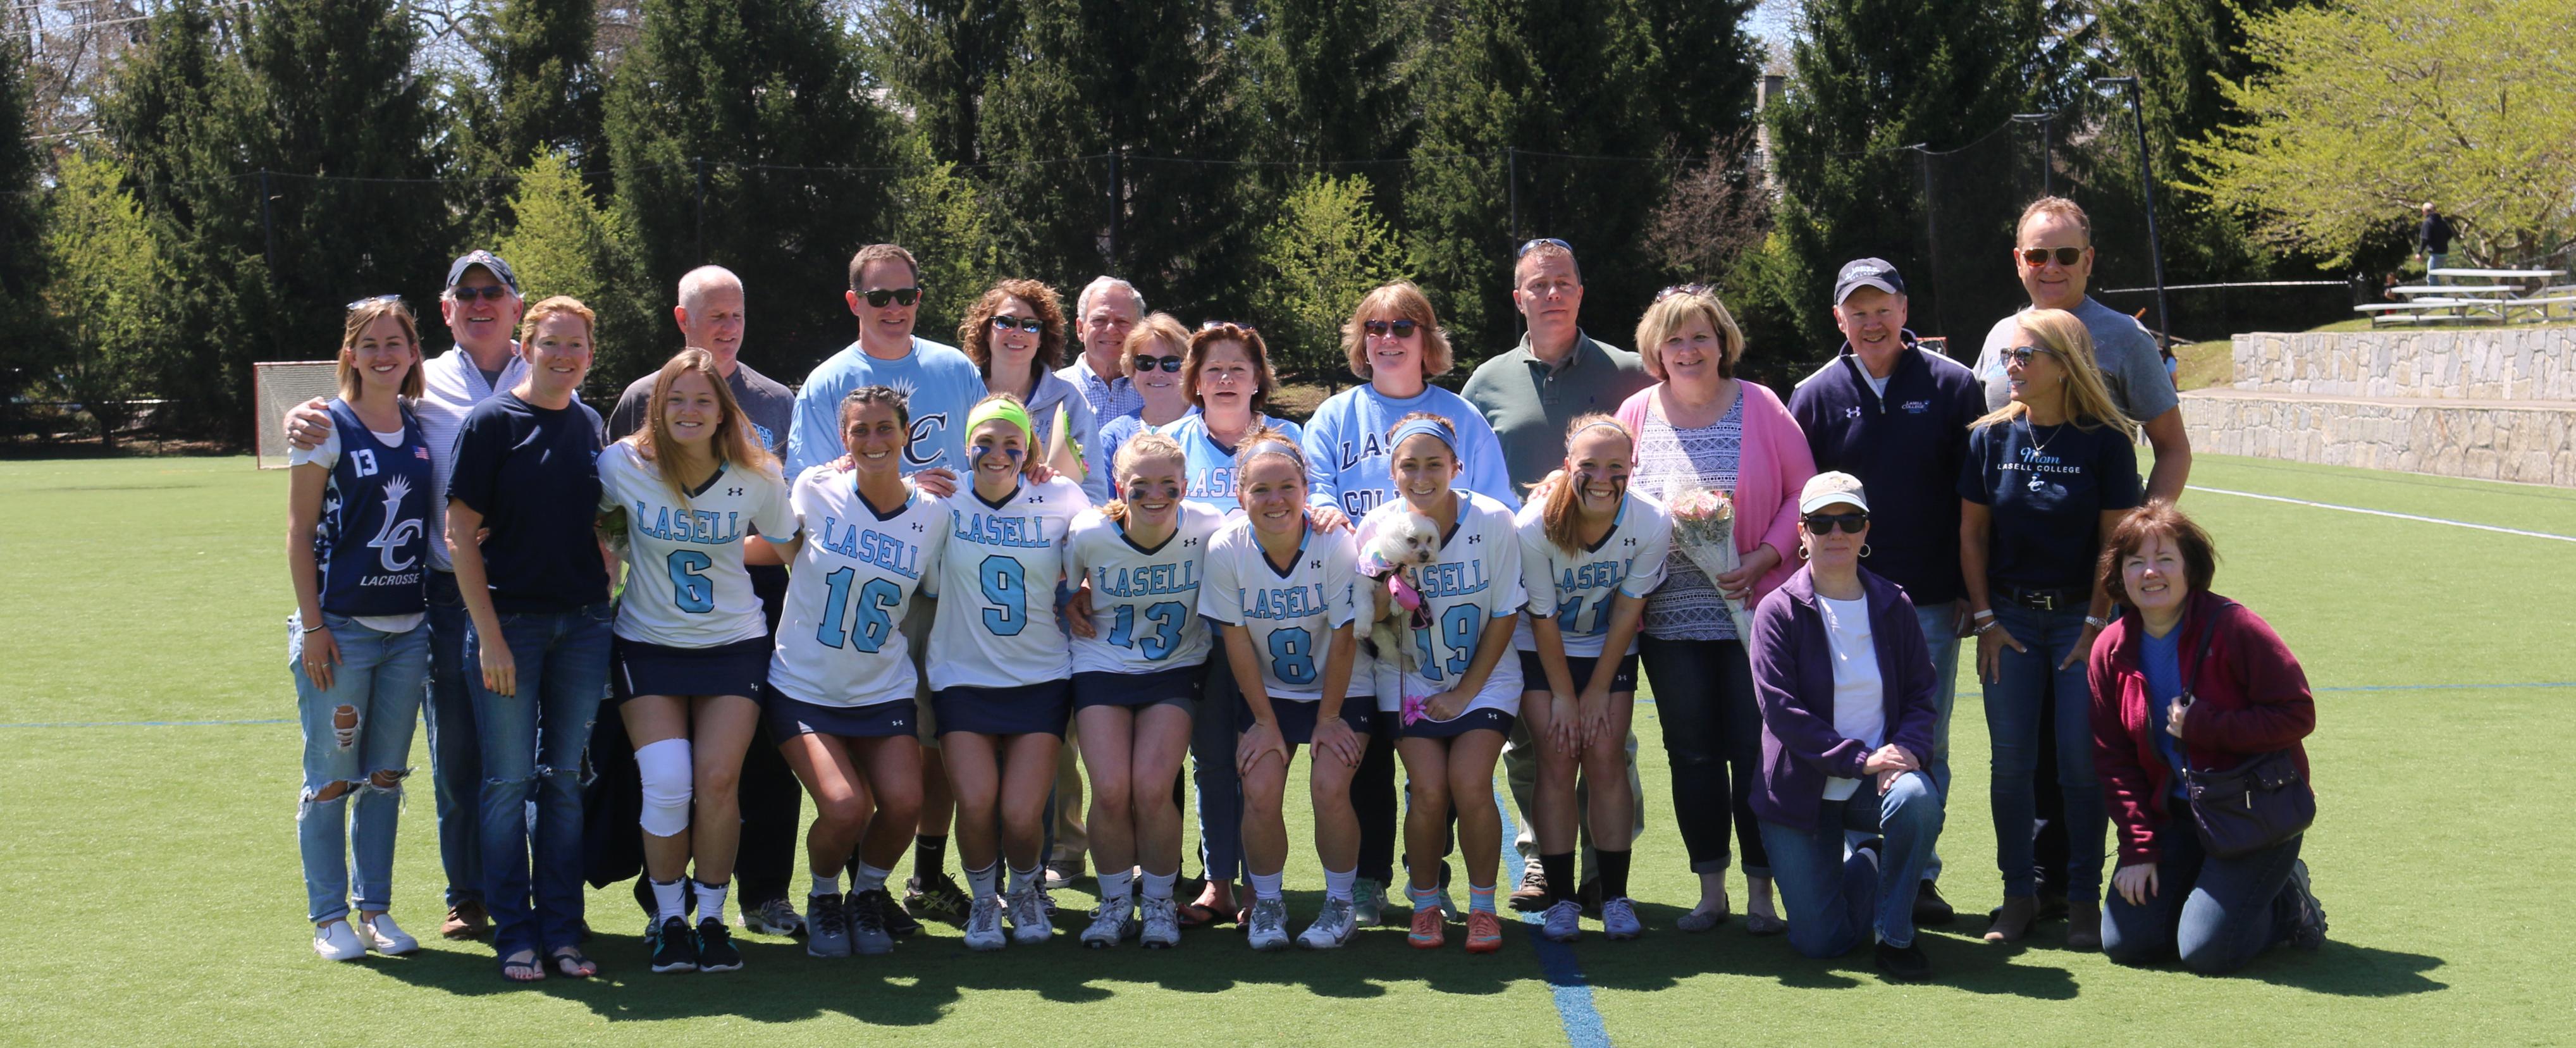 Women's Lacrosse Handles Rivier 19-7 on Senior Day